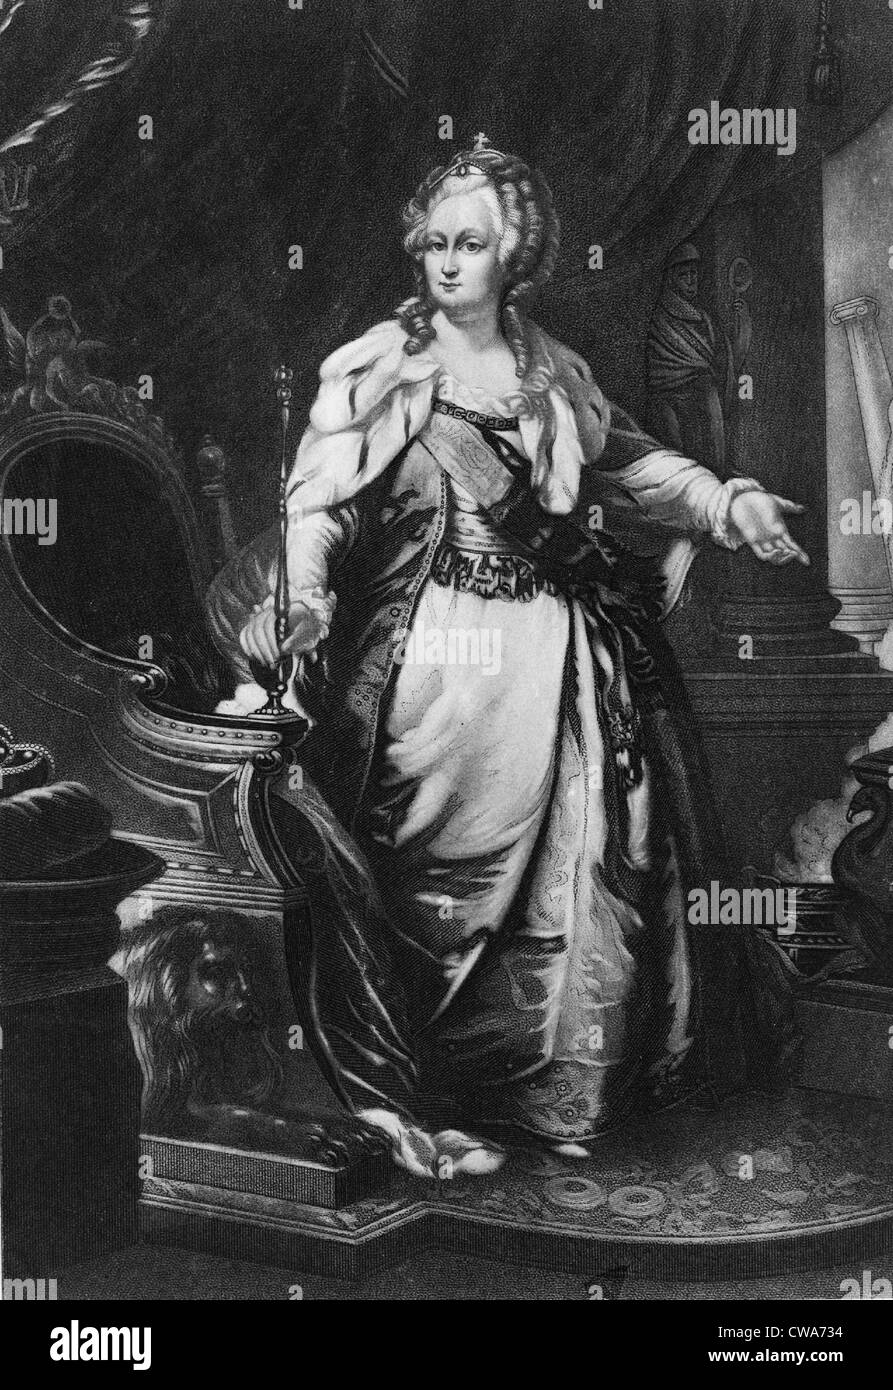 Caterina II imperatrice di Russia, (1729-1796) ritratto a figura intera. Xix secolo incisione dal XVIII secolo la pittura. Foto Stock